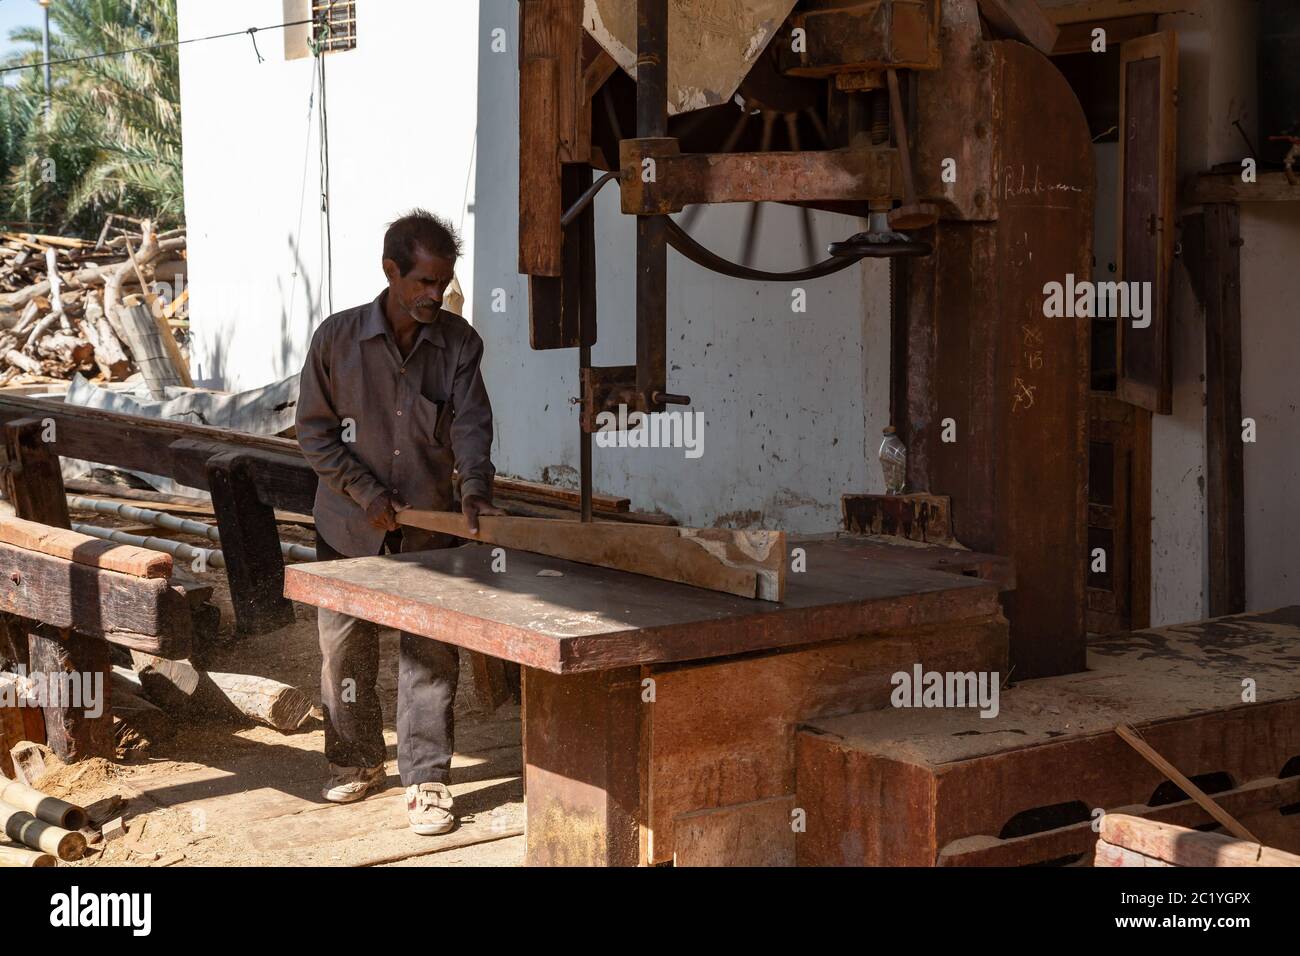 Sur, Oman - novembre 27 2019 un travailleur sciant des planches de navires dans le quai traditionnel de dhow à sur, Oman Banque D'Images